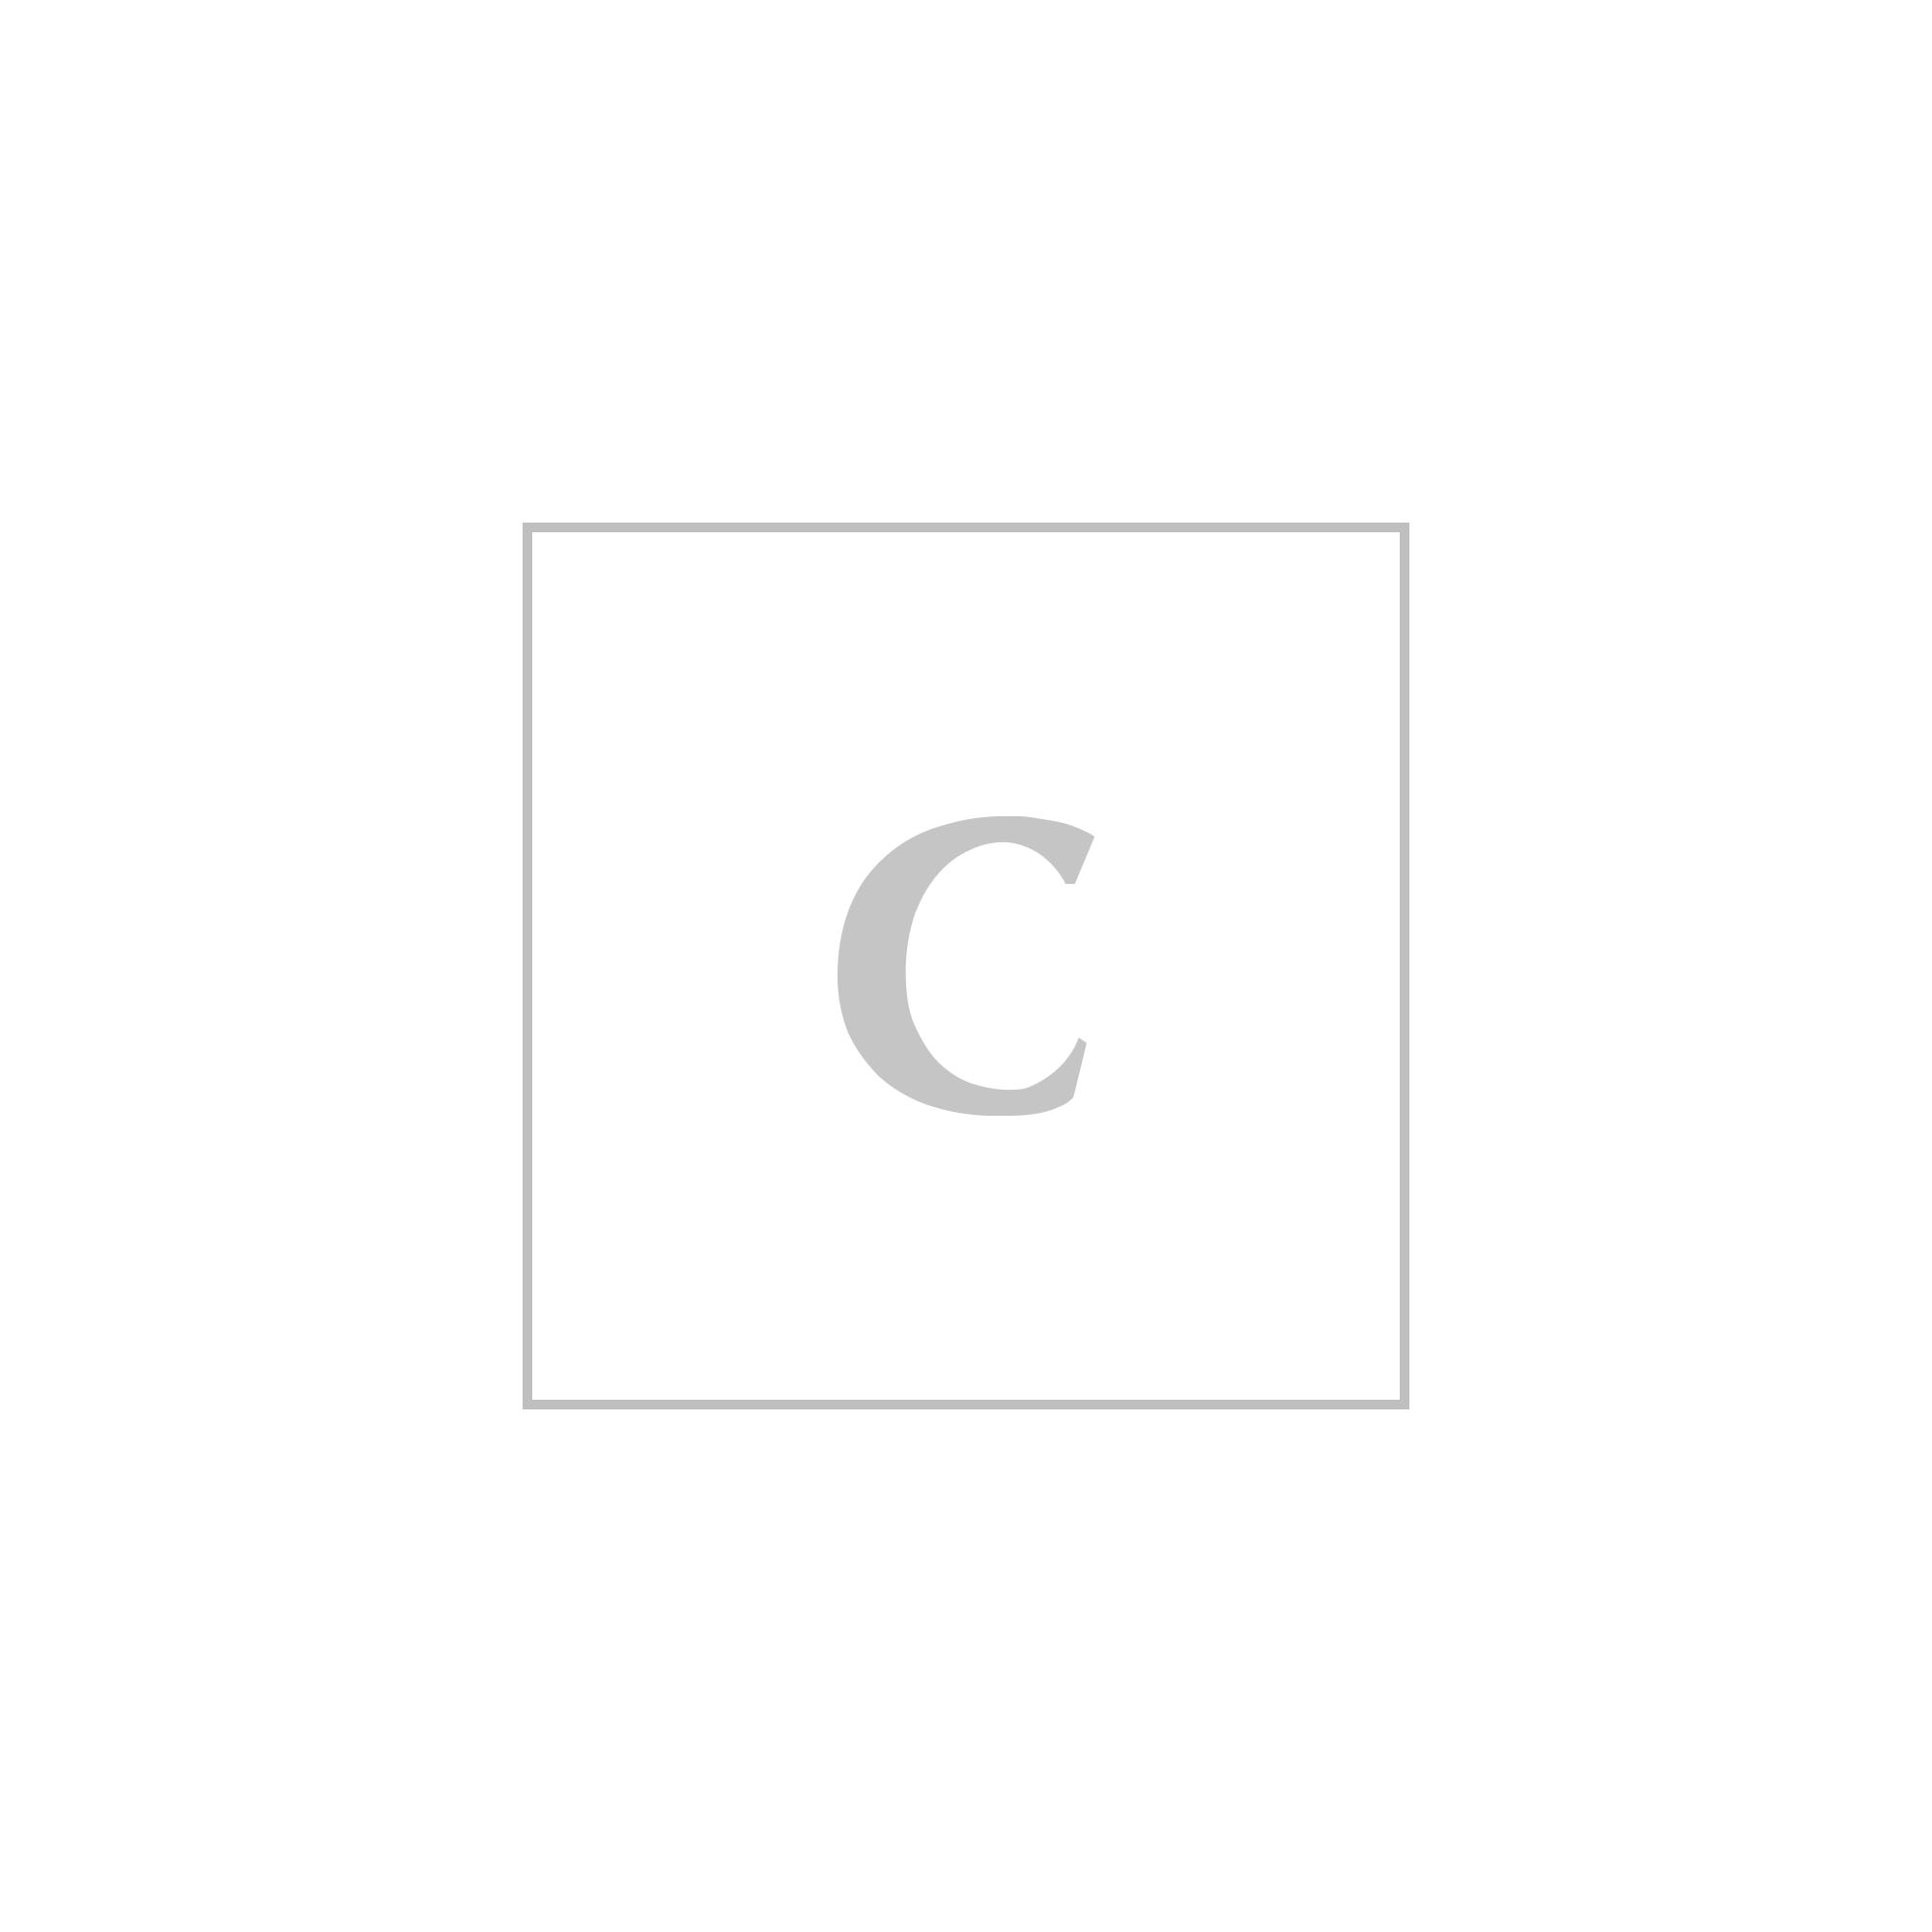 JIMMY CHOO DEGRADE' GLITTER EMMIE CLUTCH,201516AAV000001-RGGS